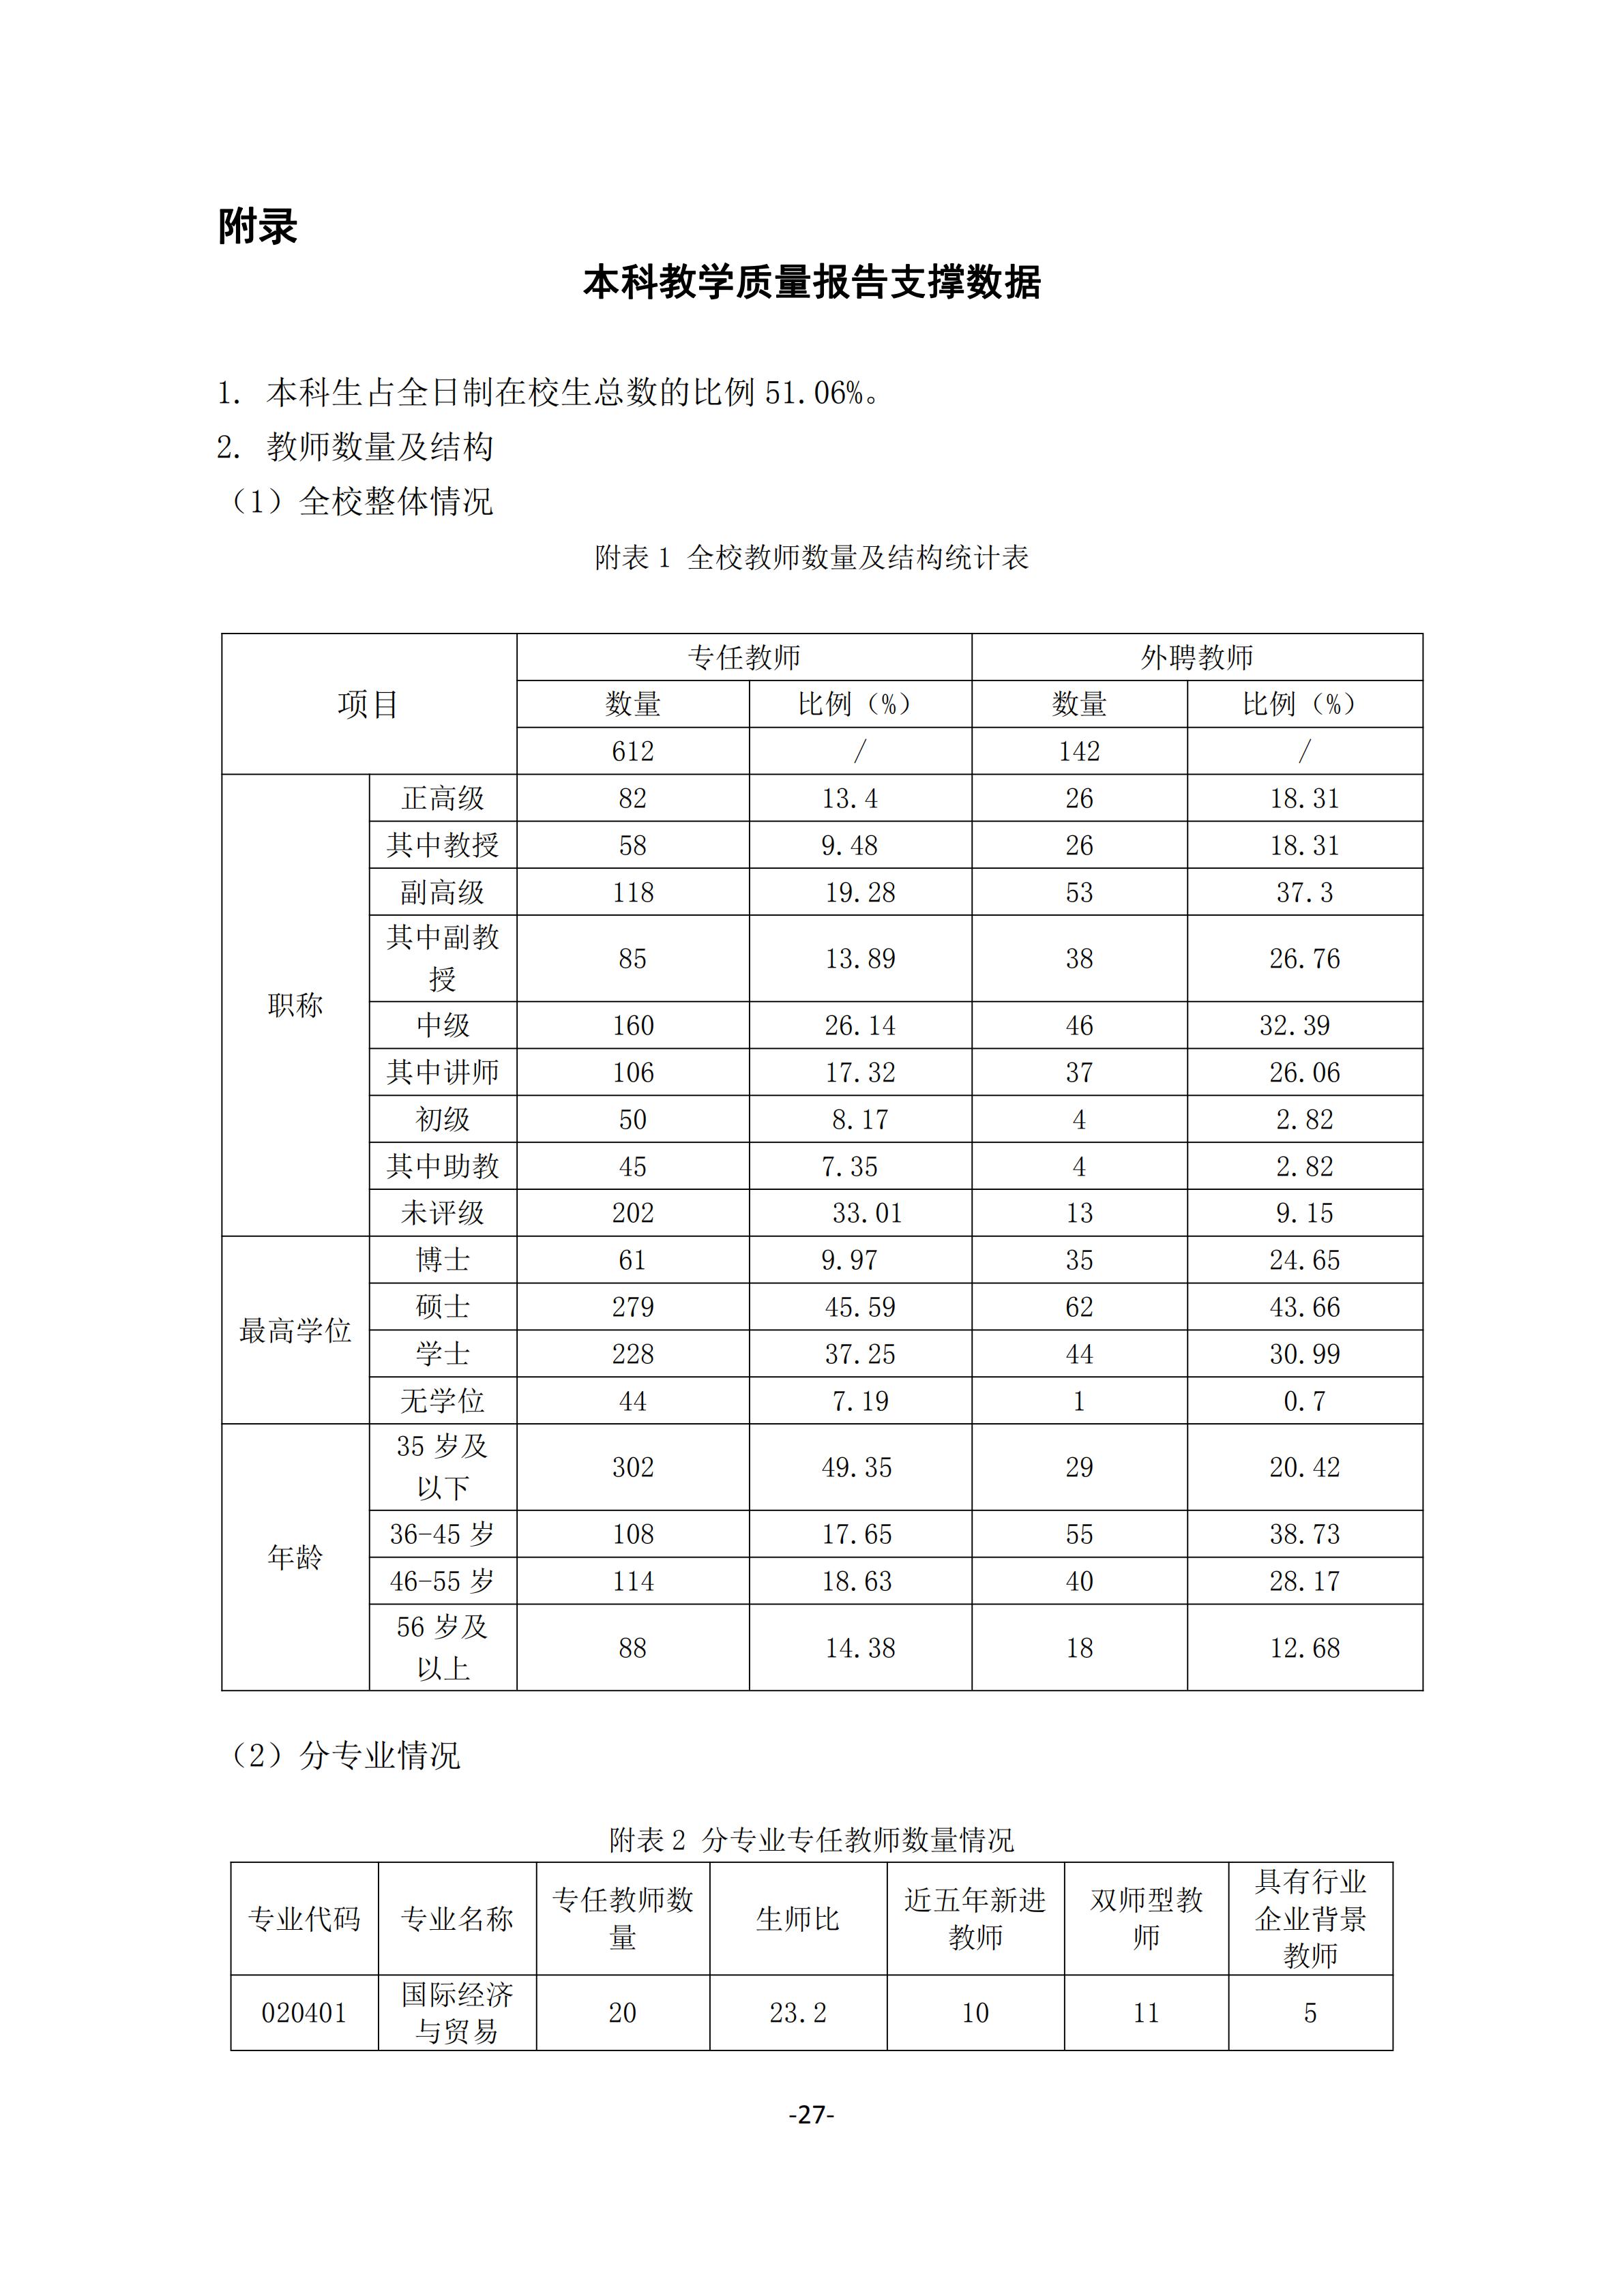 1.湖南交通工程学院2018-2019学年本科教学质量报告_26.jpg